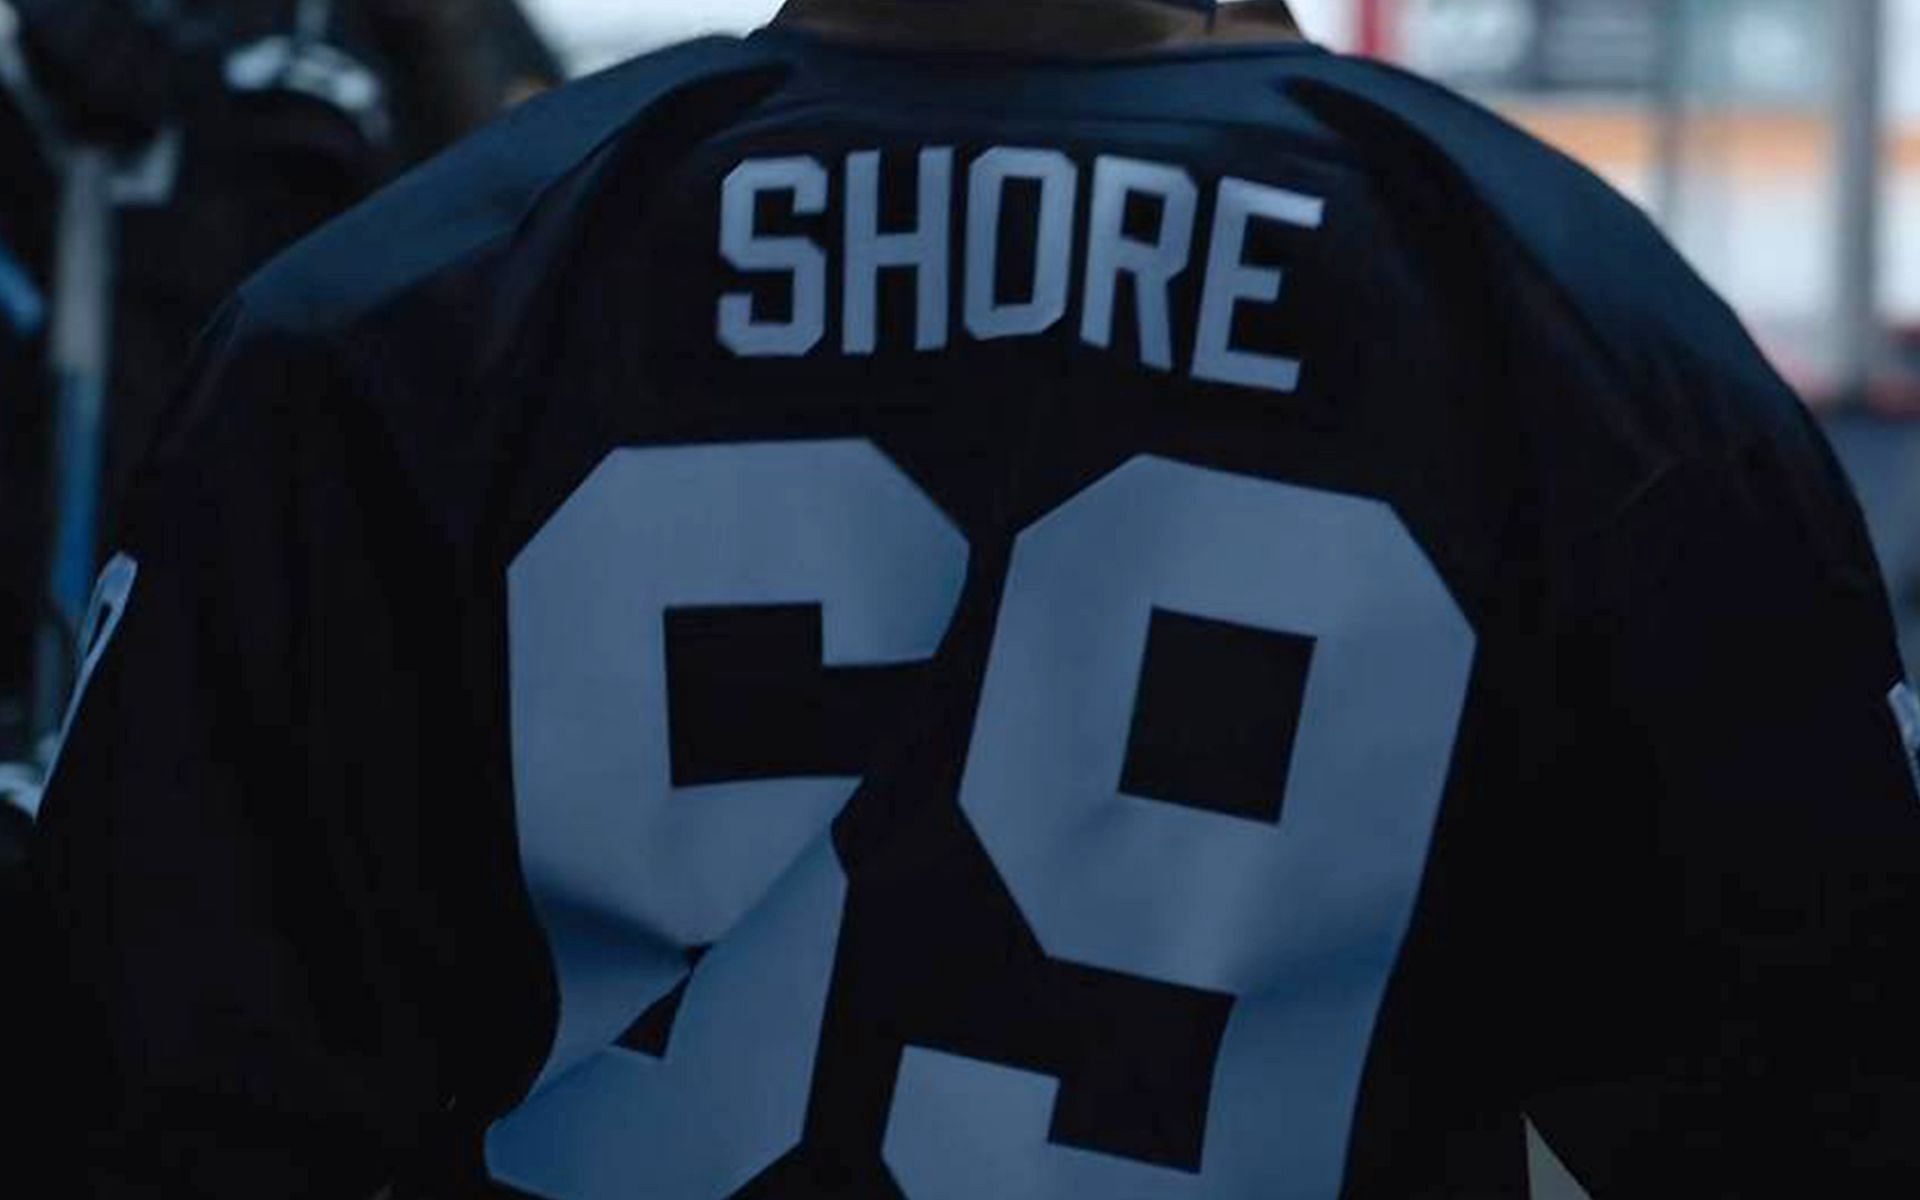 Shoresy Season 2 Release Date Set In Teaser Trailer for Letterkenny Spin-off